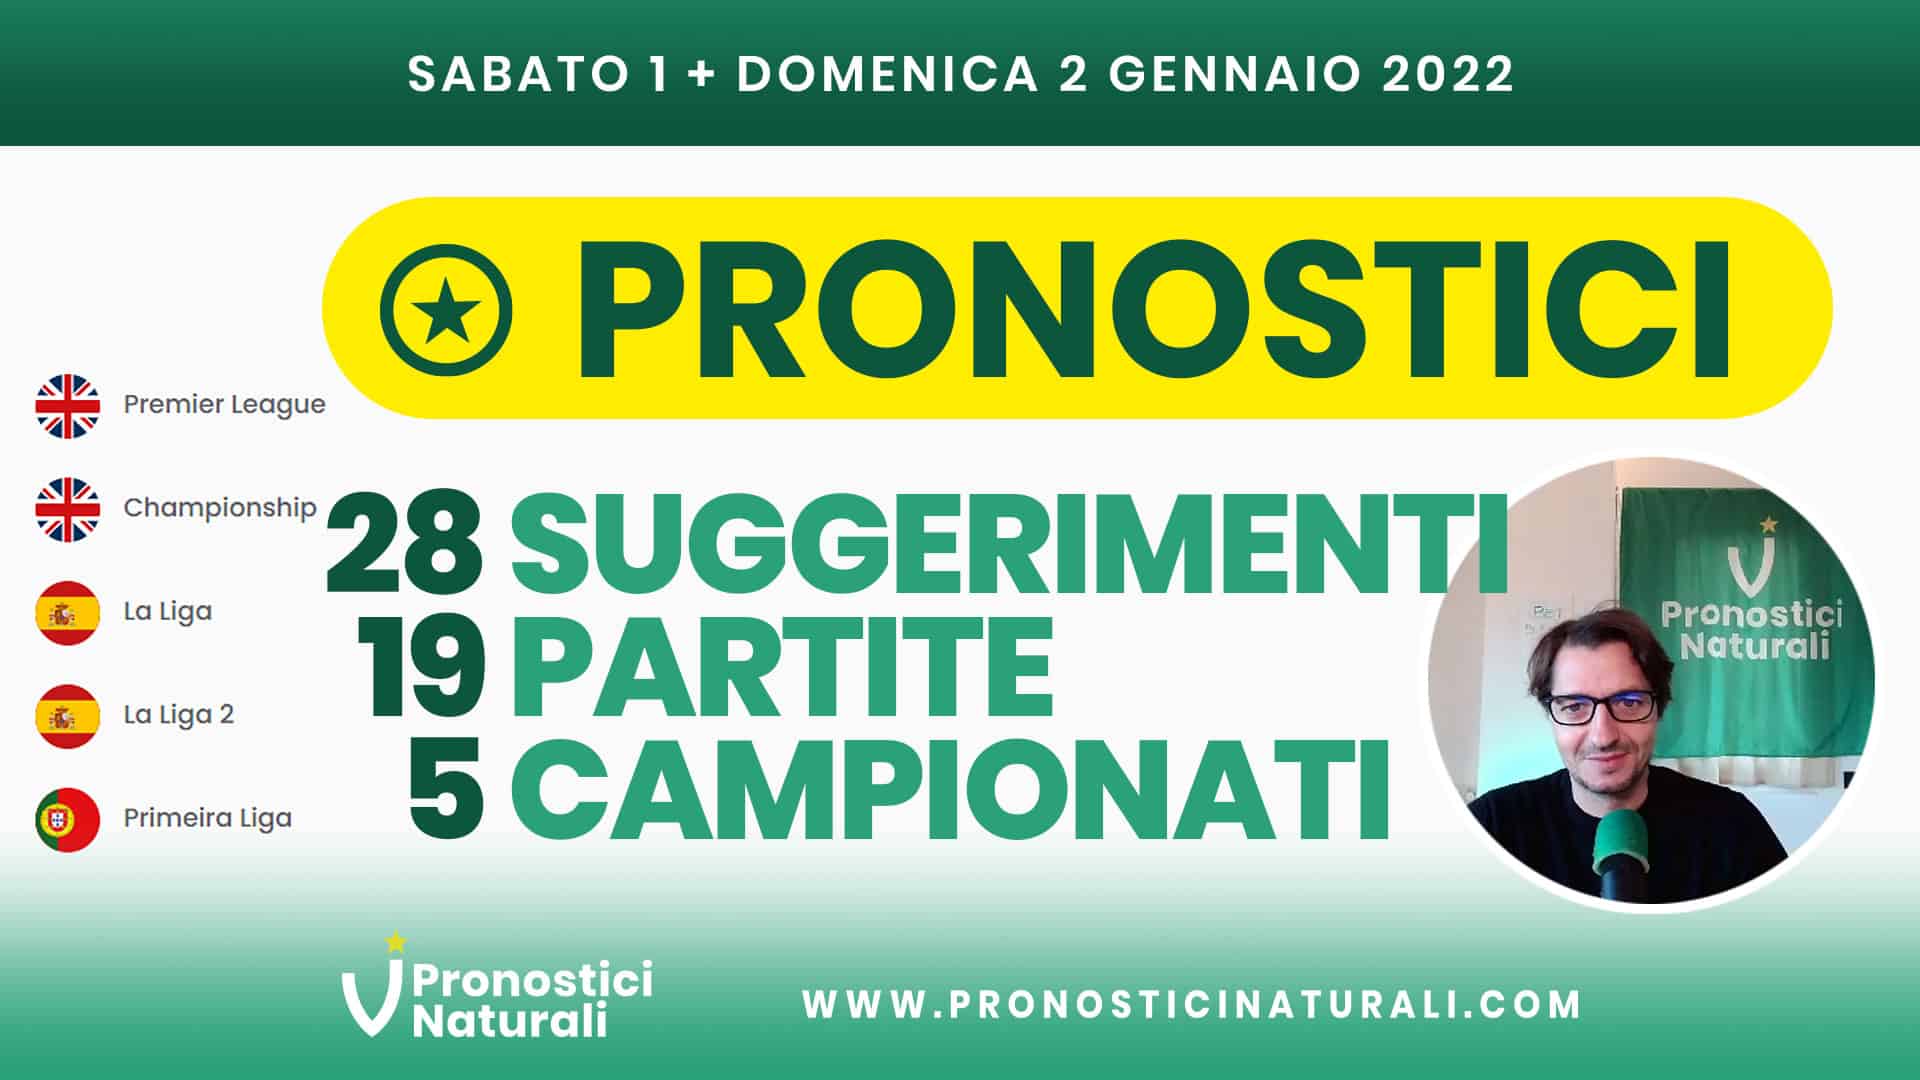 Pronostici Naturali Video Analisi Scommesse Betting Calcio Analisi Pre Partite Sabato 1 Domenica 2 Gennaio 2022